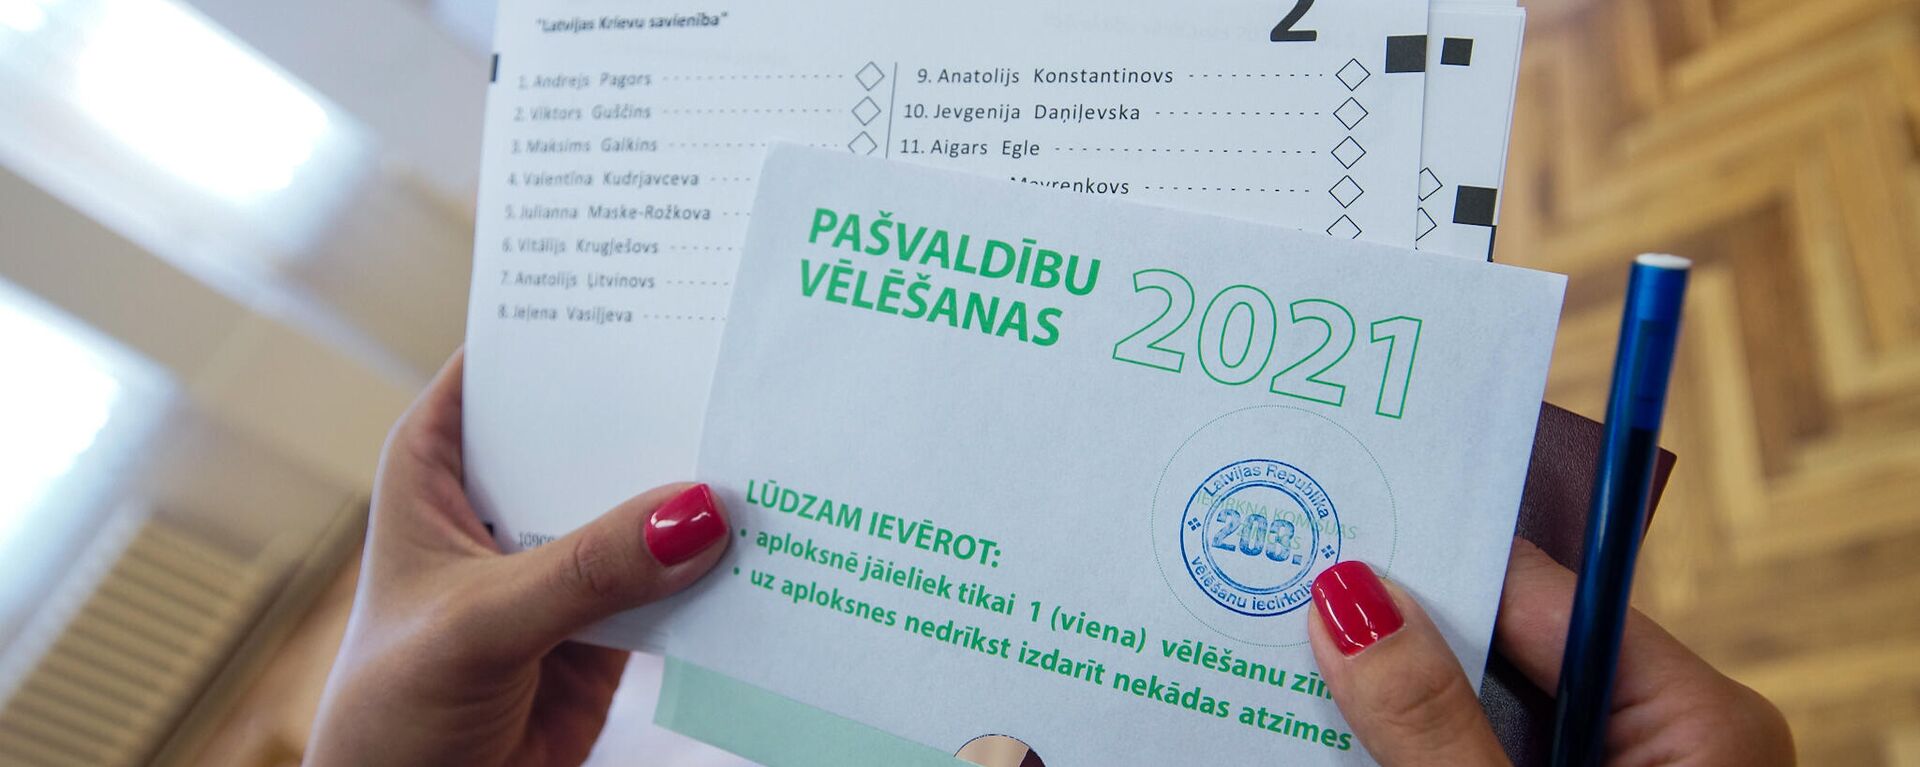 Муниципальные выборы 2021 в Латвии - Sputnik Латвия, 1920, 05.07.2021